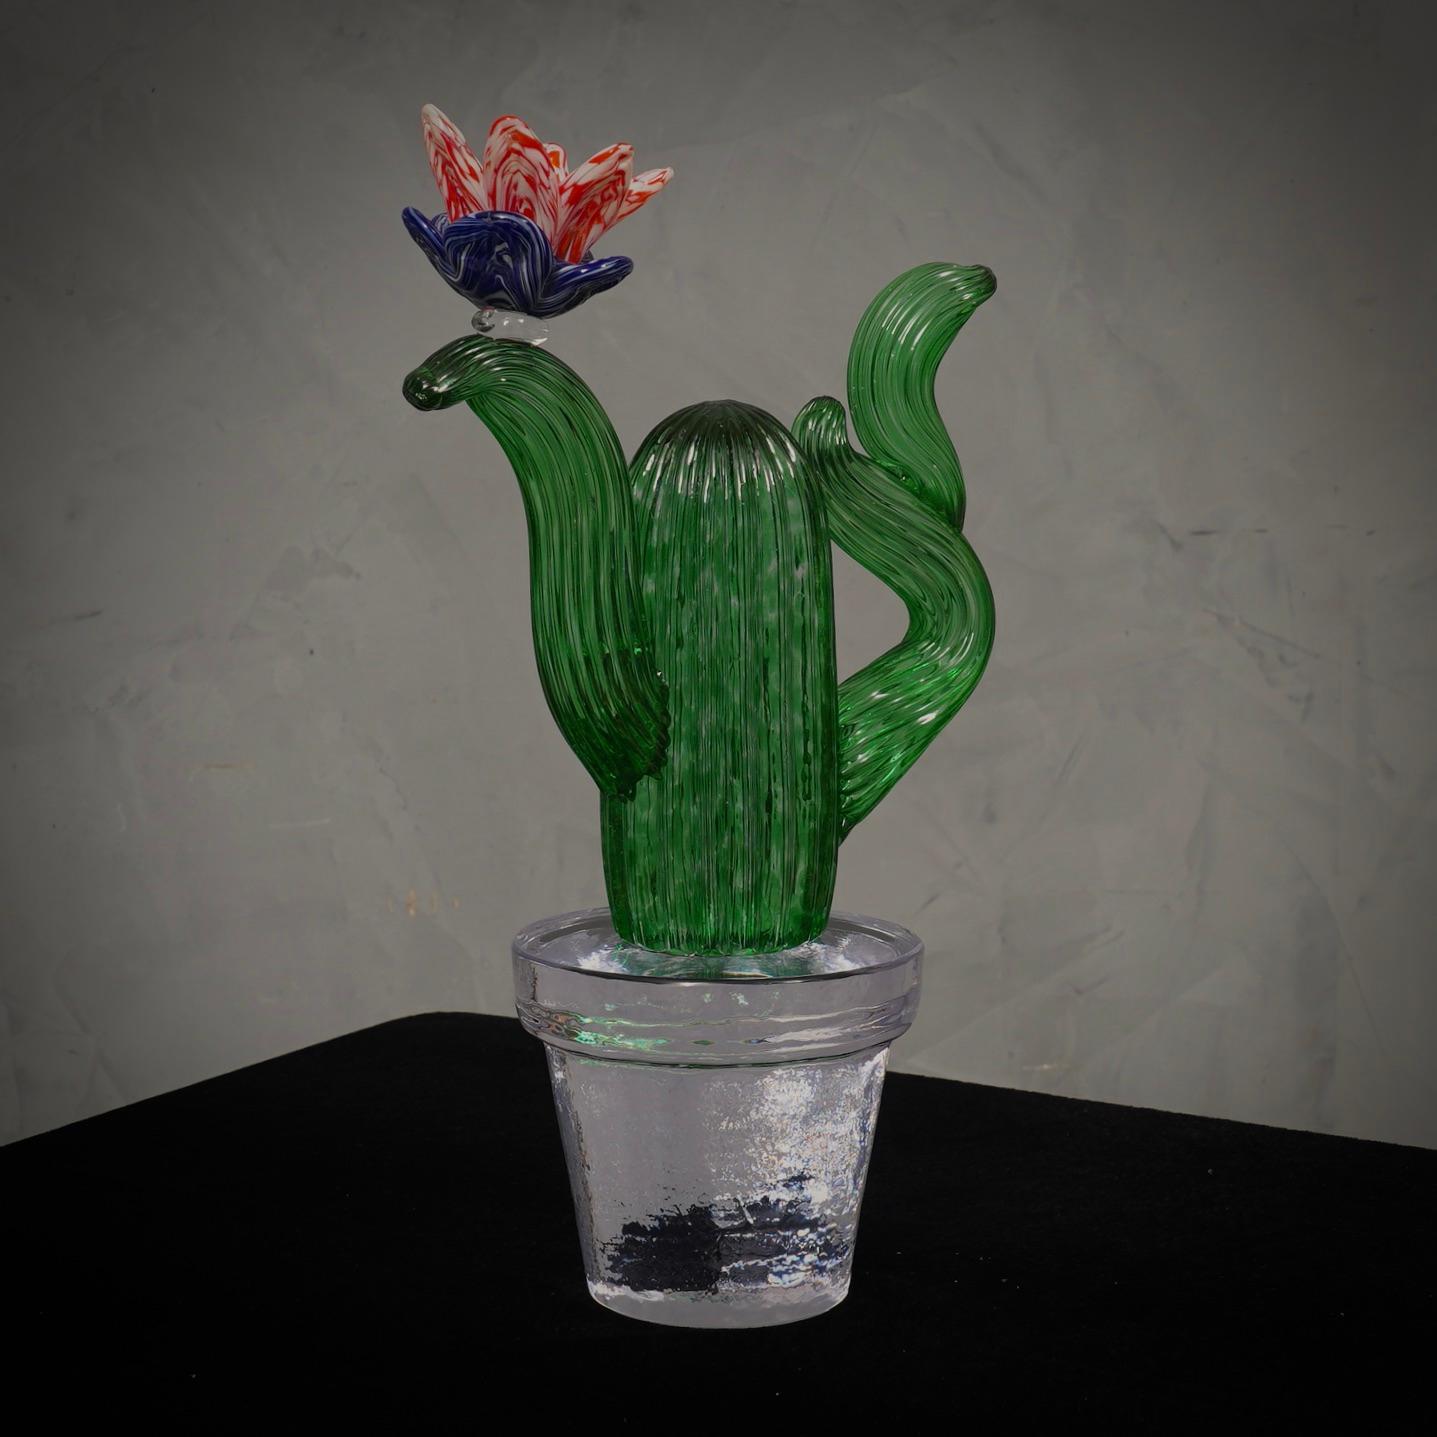 Design/One italien par Marta Marzotto créatrice de style, ce cactus est une icône de mode du style italien, vert émeraude avec une tache de couleur rouge et bleu, la fleur. Raffinement et classe comme dans le style de Marta Marzotto, des pièces